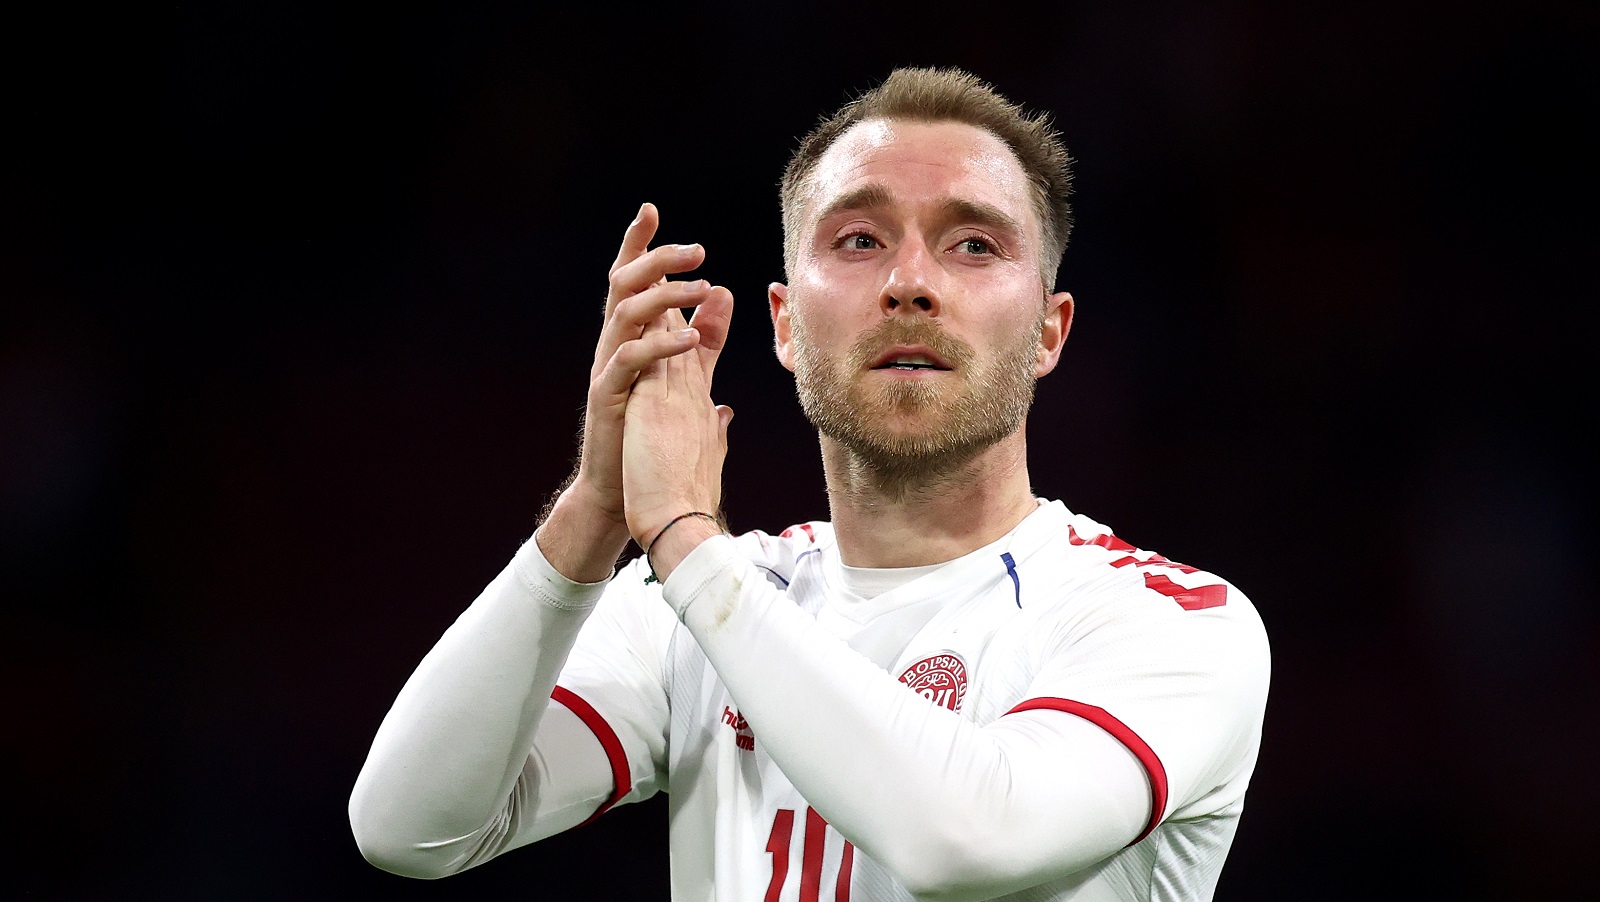 Denmark’s Christian Eriksen Scores In First International Soccer Match Since Cardiac Arrest